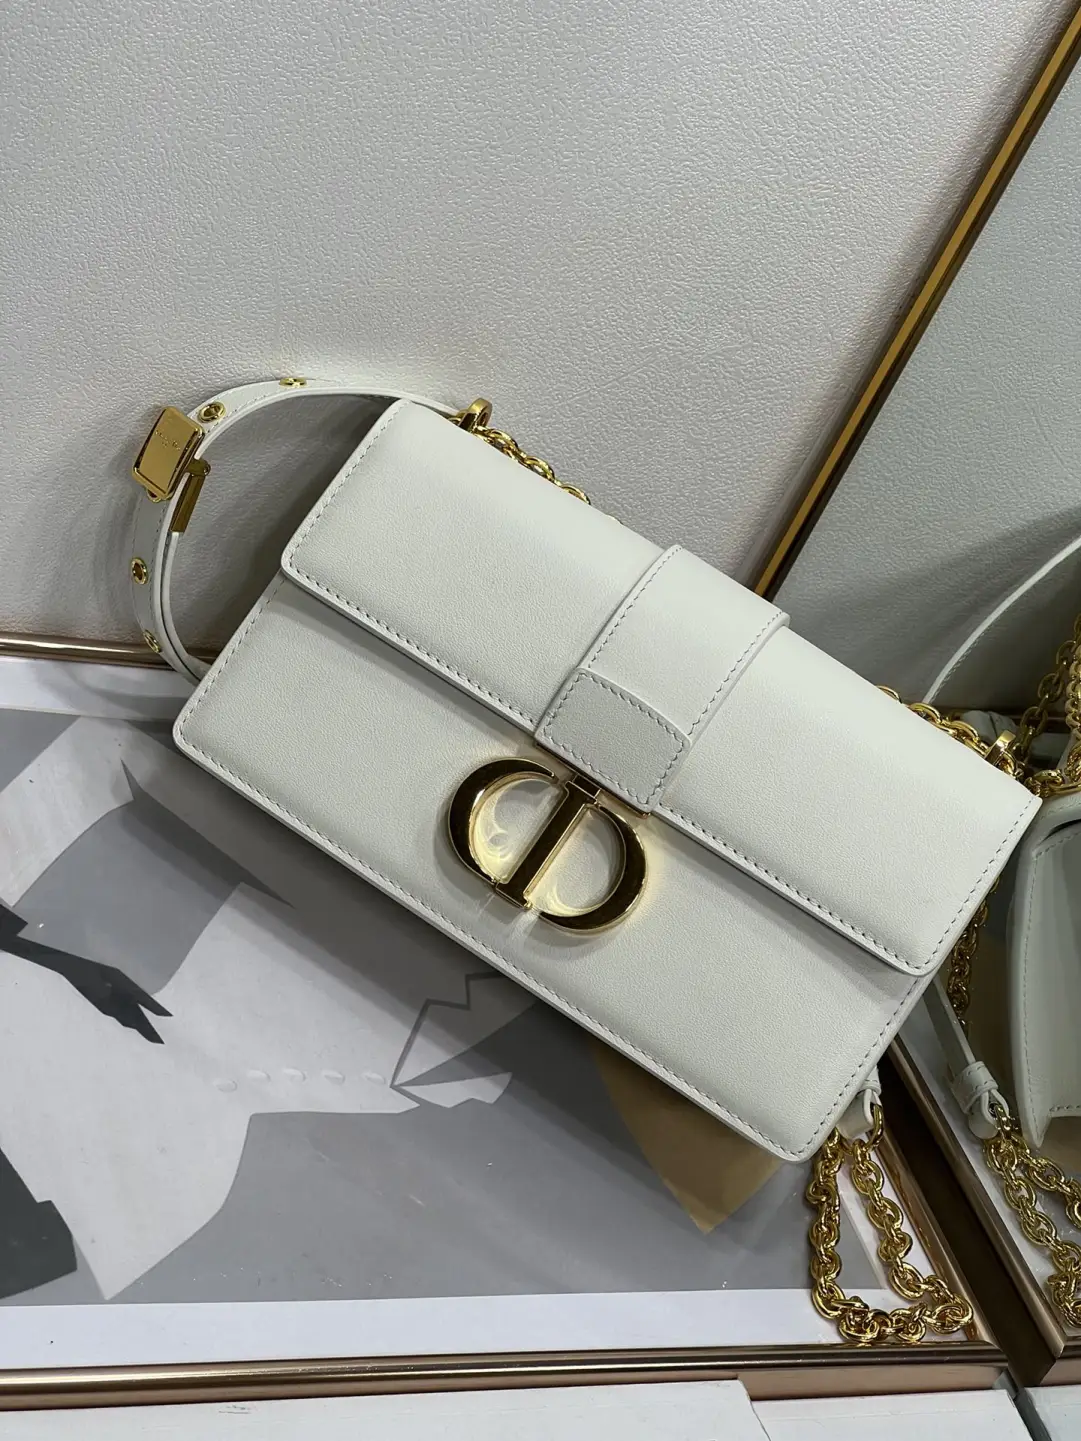 Replica Dior 30 Montaigne Bag White